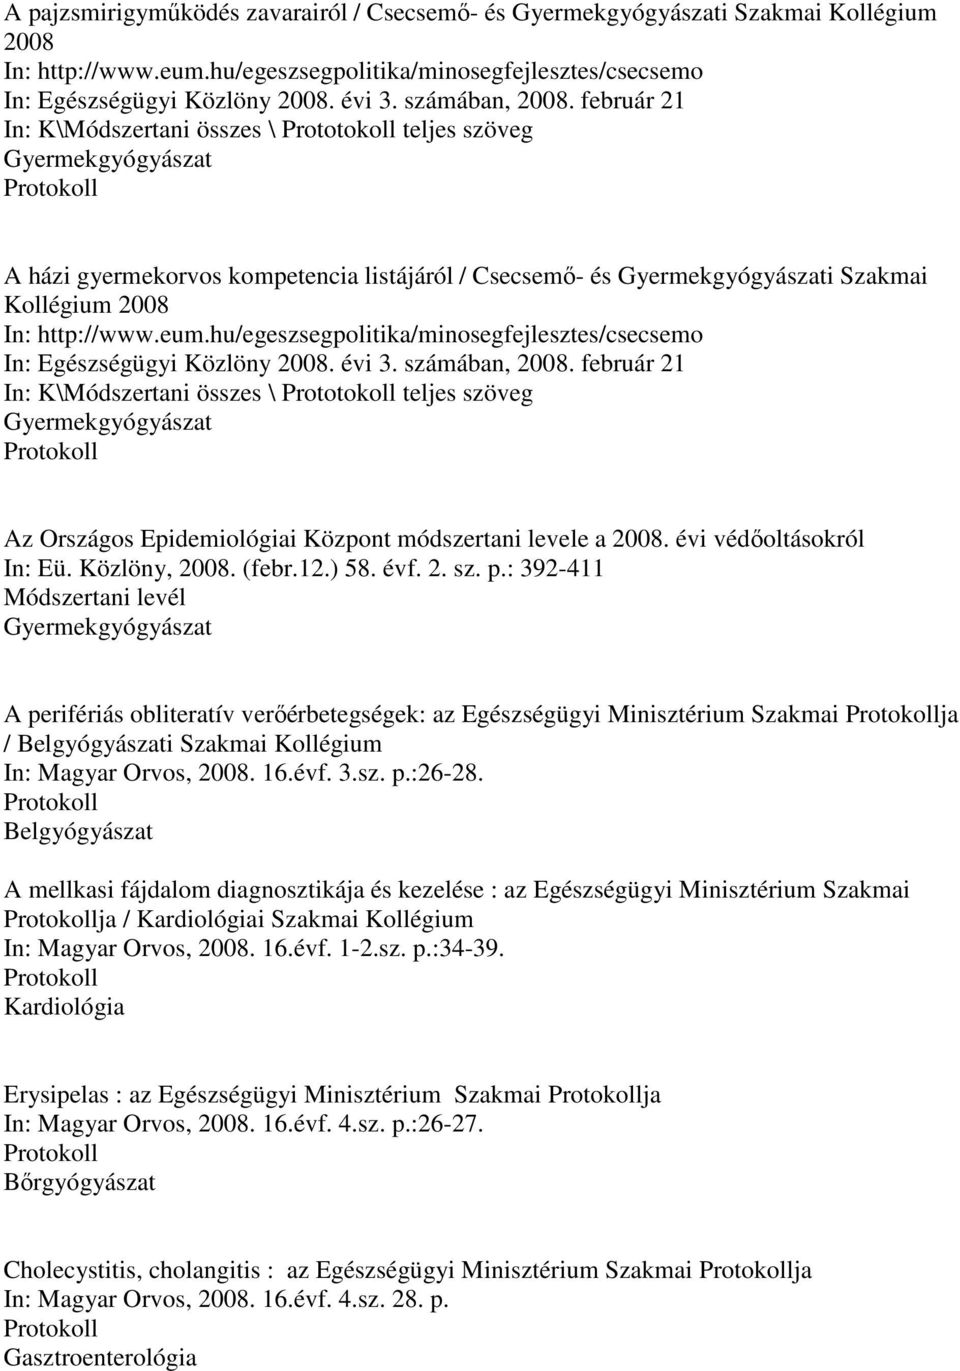 február 21 In: K\Módszertani összes \ Prototokoll teljes szöveg Gyermekgyógyászat A házi gyermekorvos kompetencia listájáról / Csecsemı- és Gyermekgyógyászati Szakmai Kollégium 2008 In: http://www.